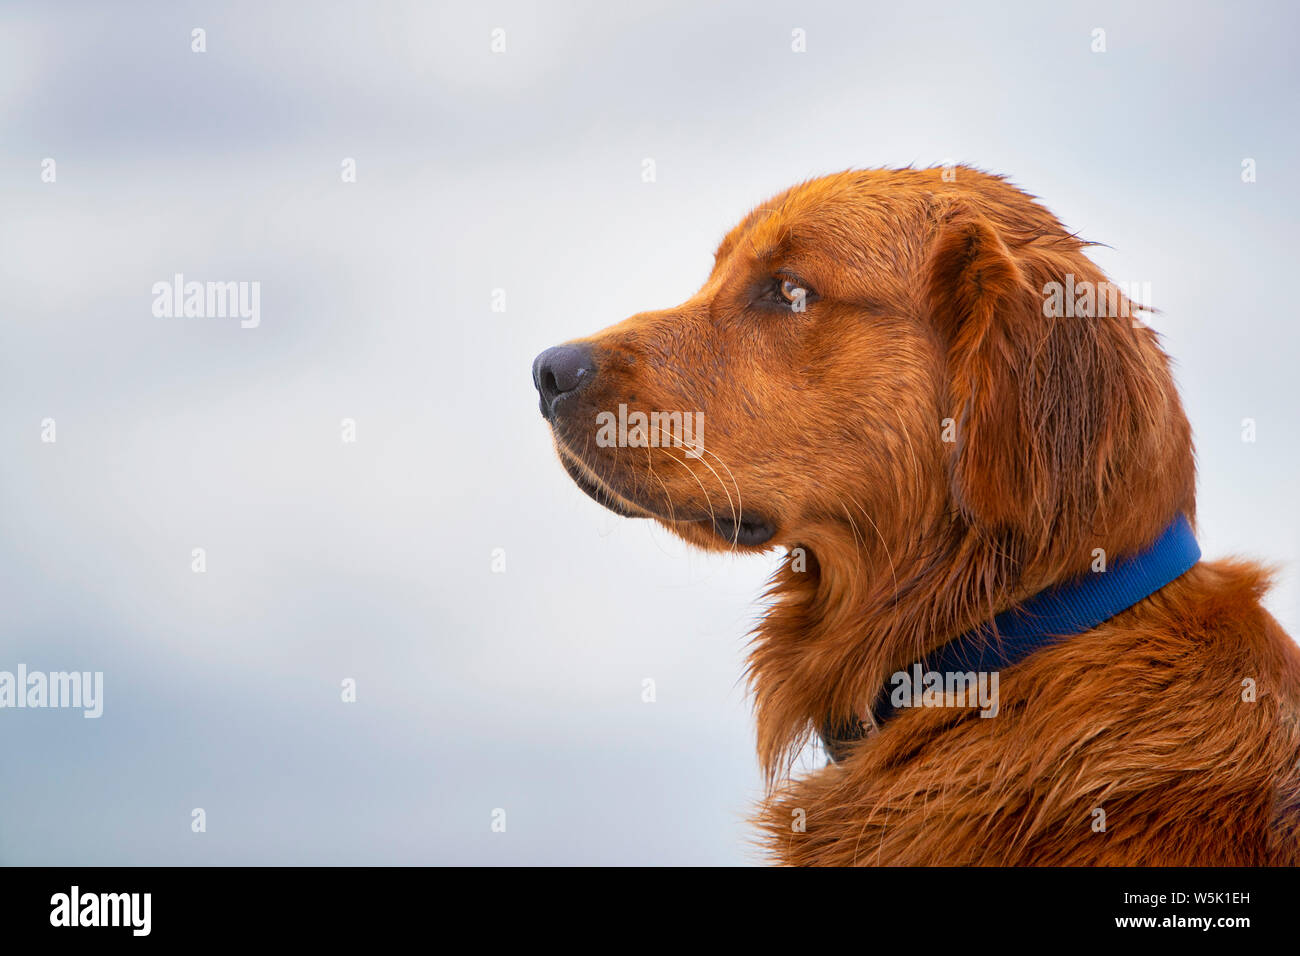 Close Up Side View Of A Golden Retriever Dog Stock Photo Alamy